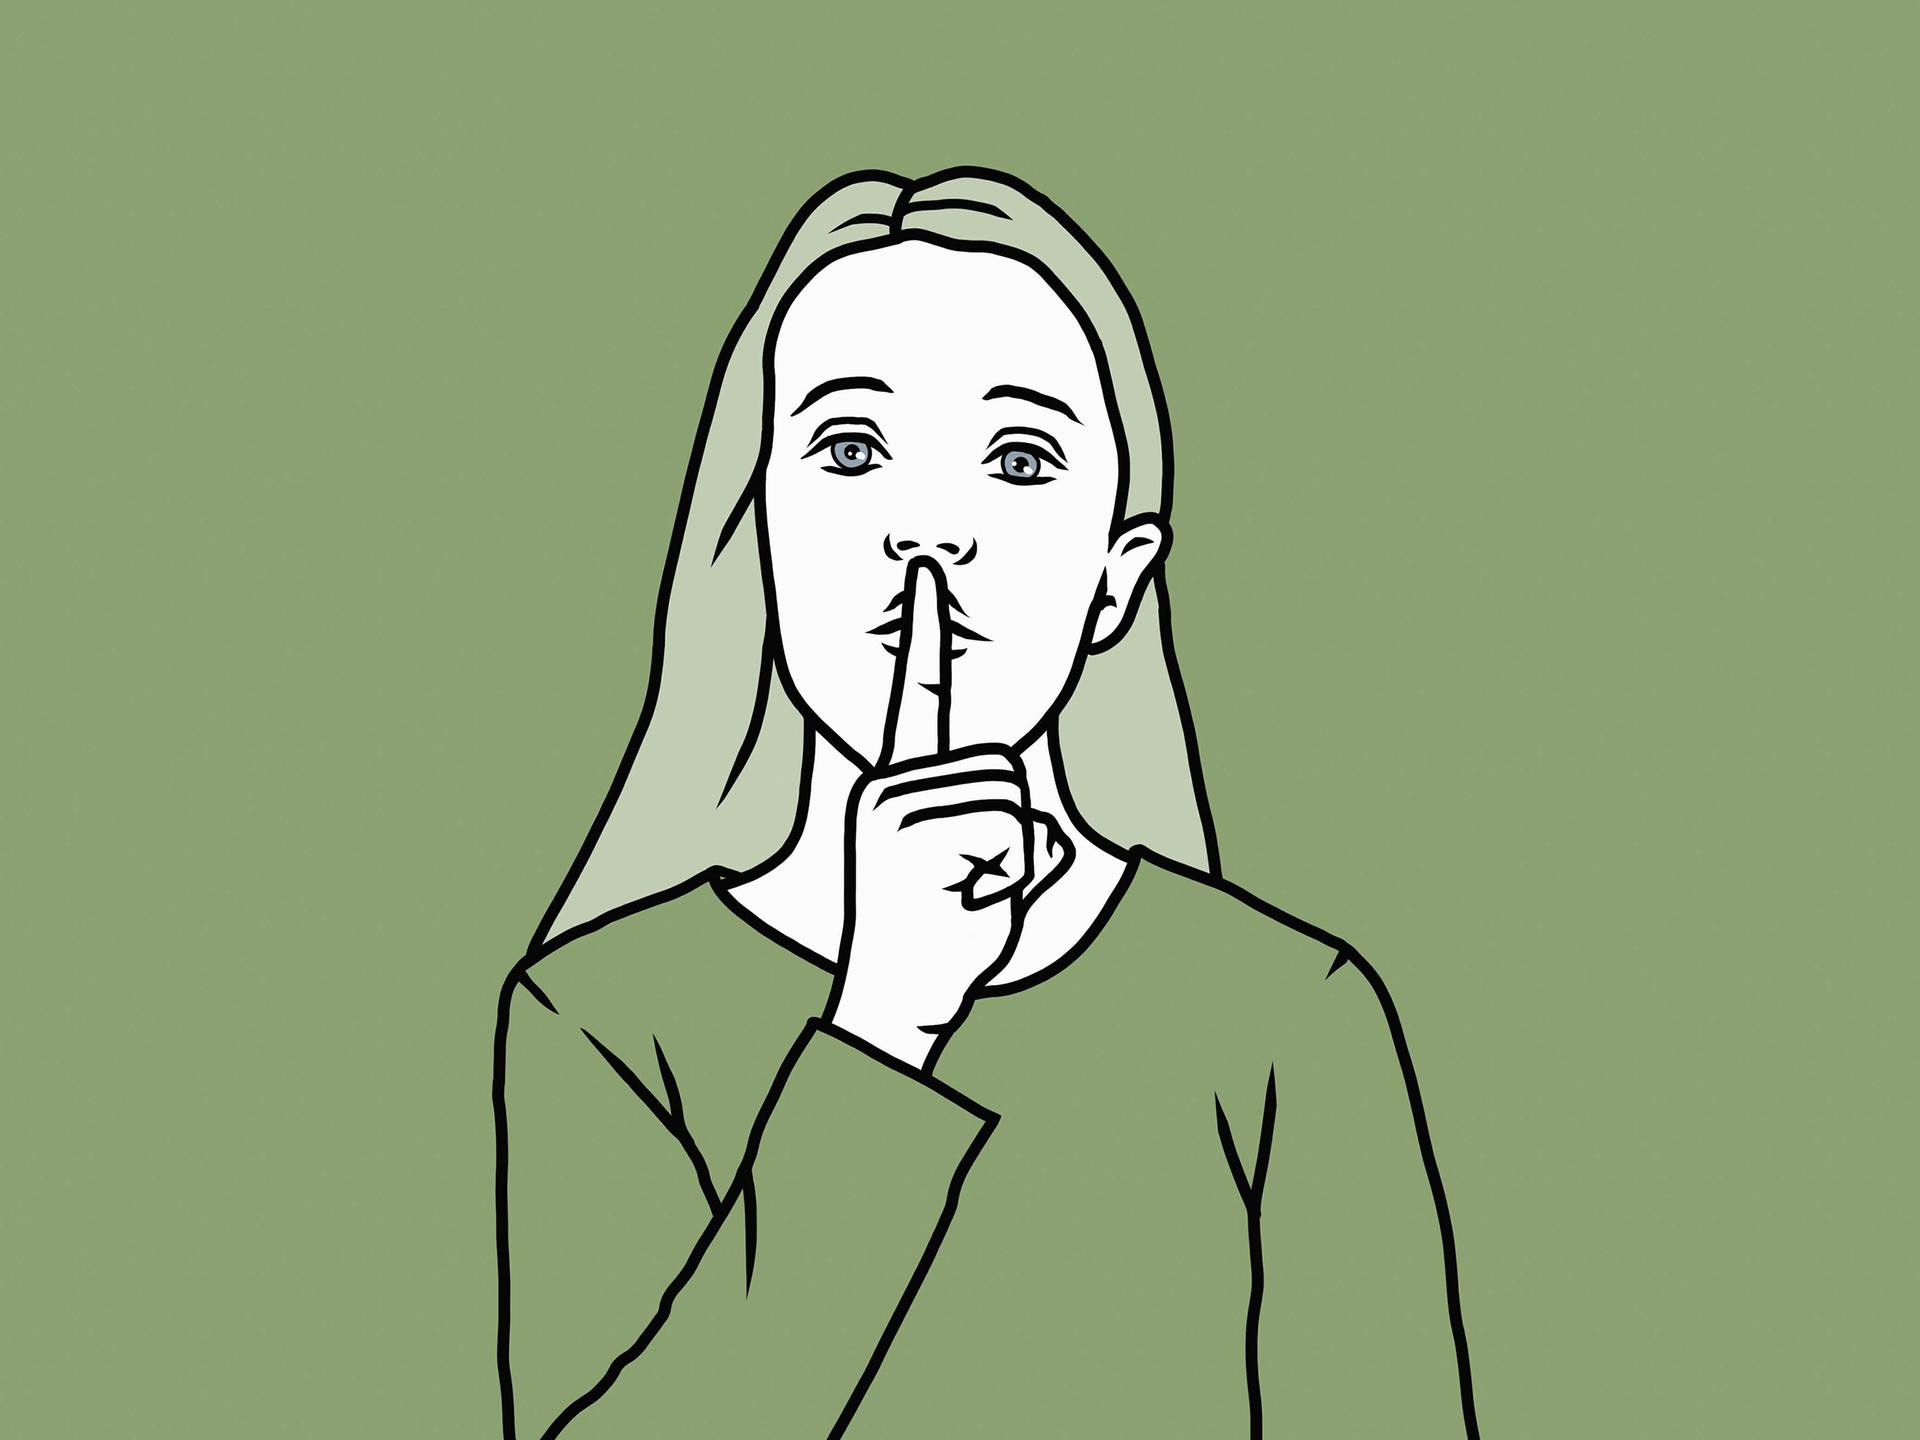 Illustration: Porträt einer Frau mit leiser "shhh" Geste, einem Finger vor dem Mund.